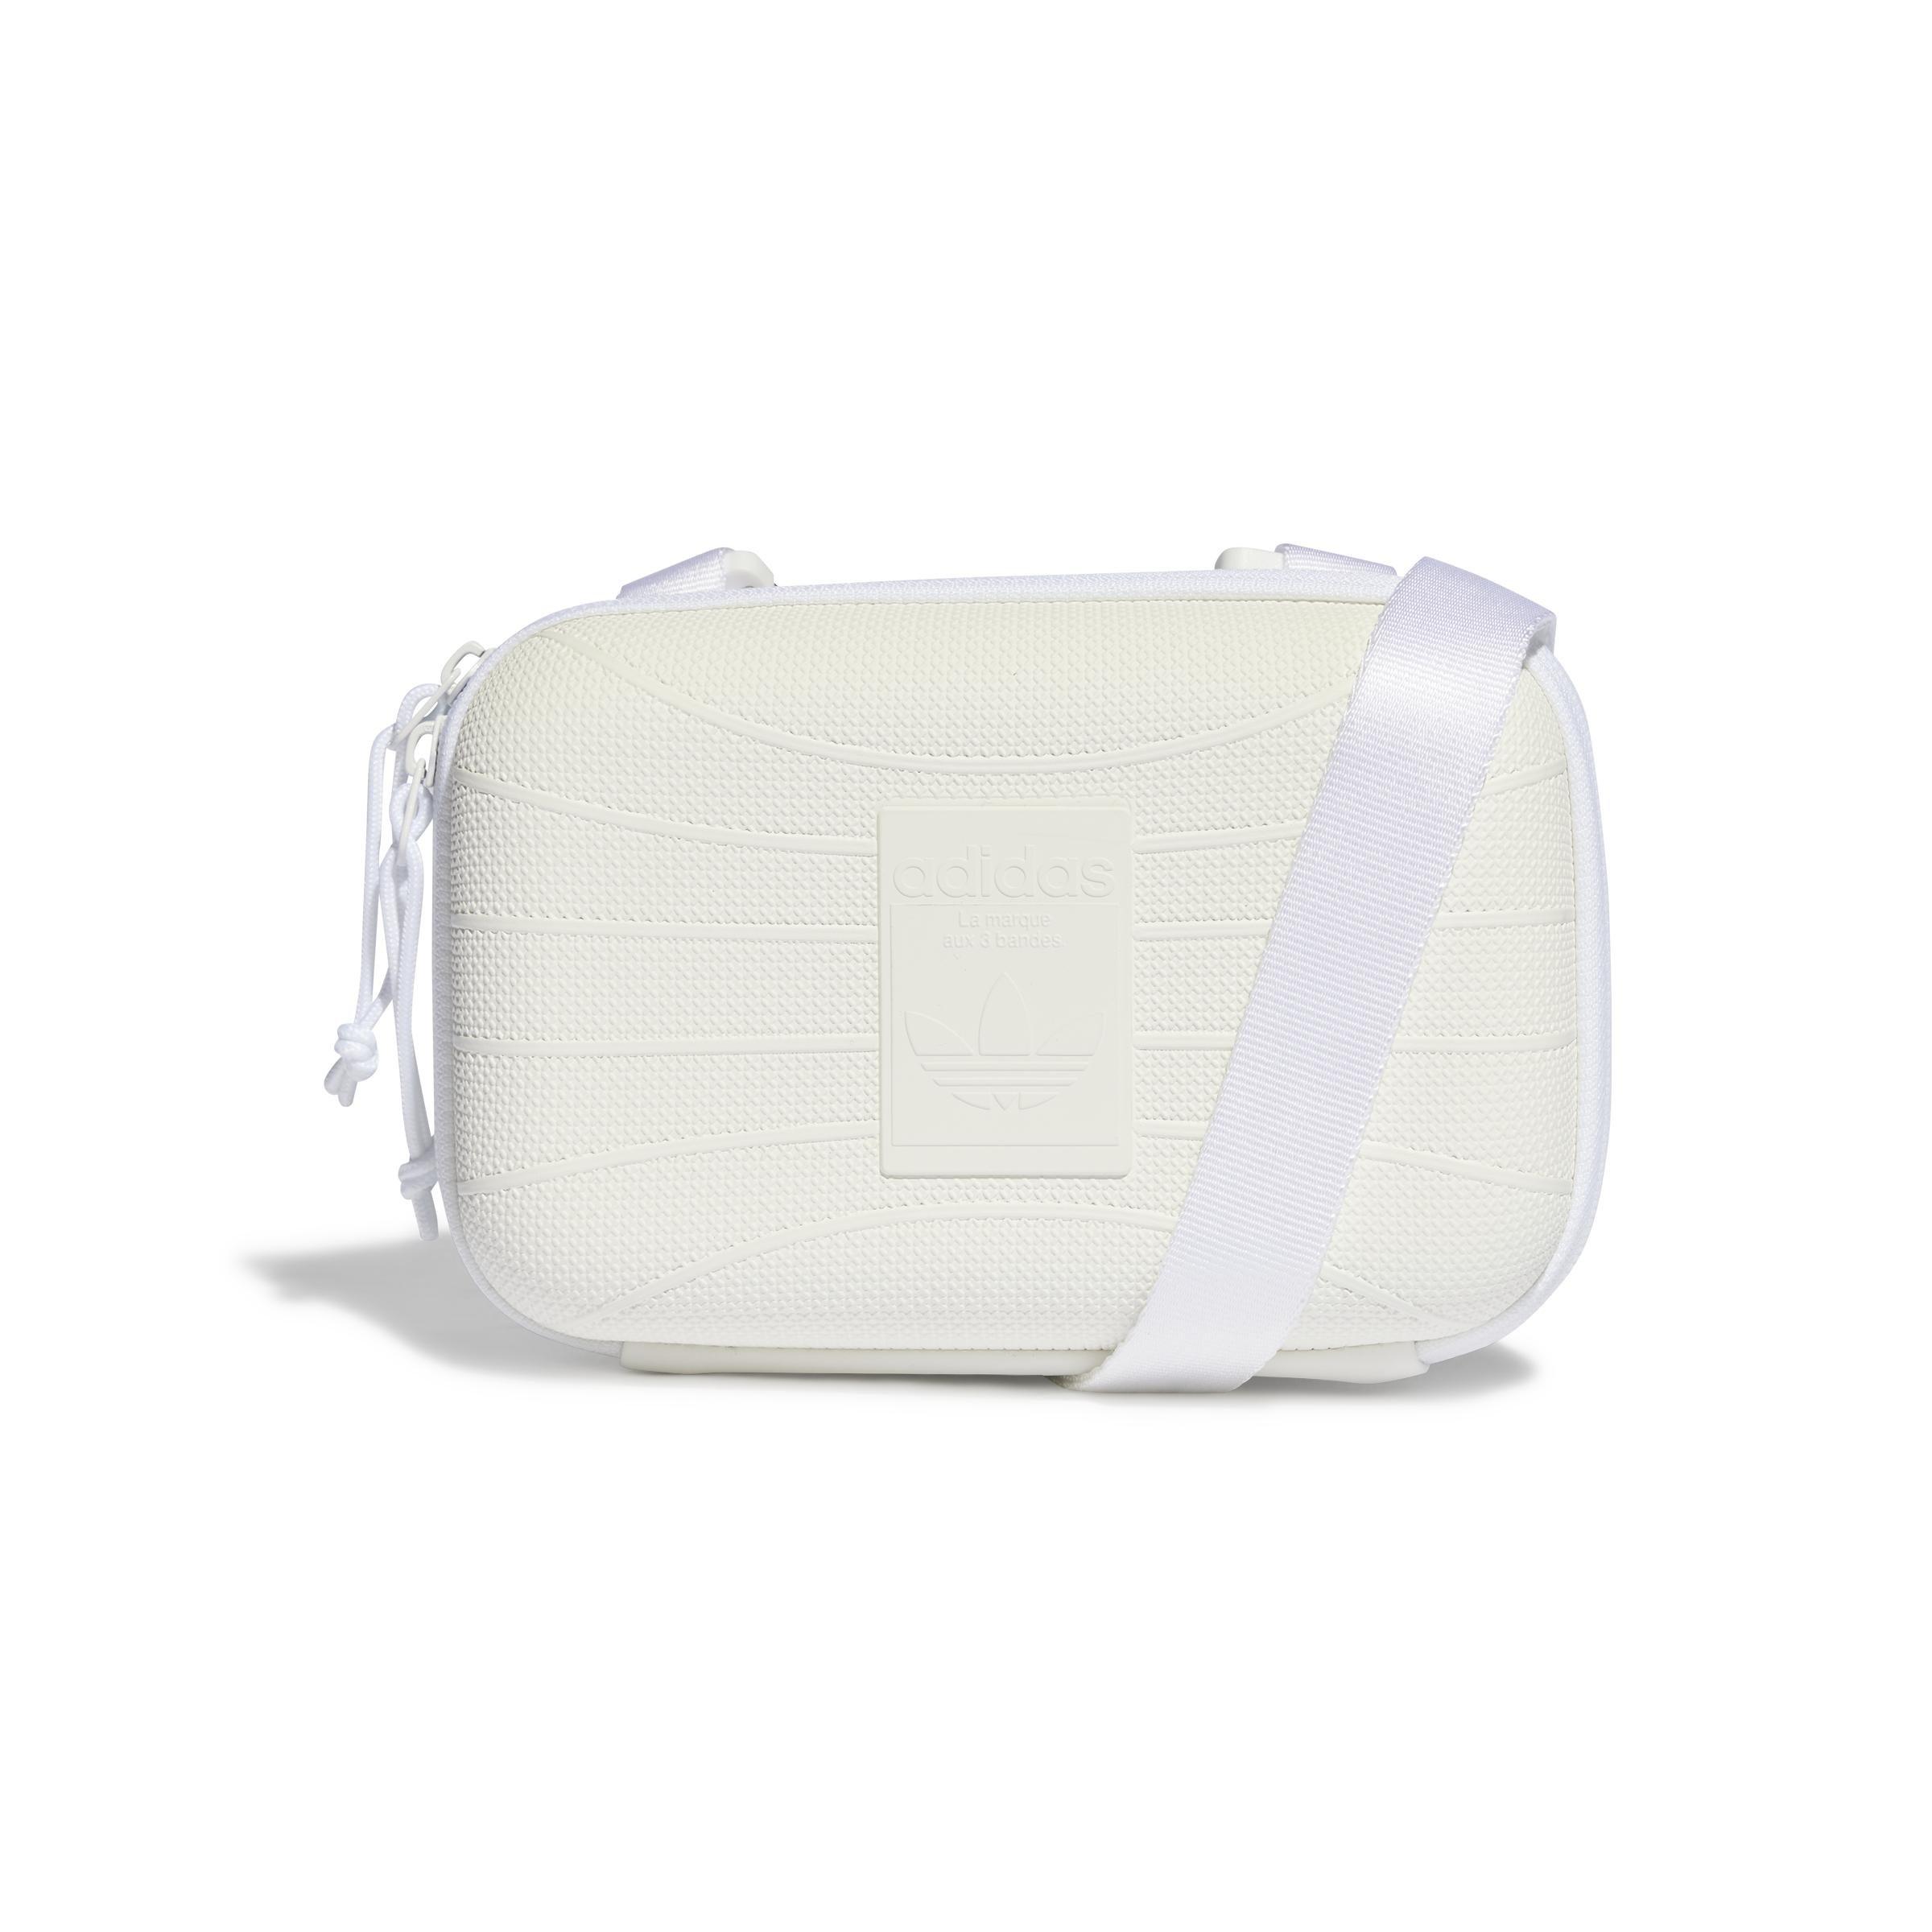 adidas - Unisex Sst Airliner Bag, White